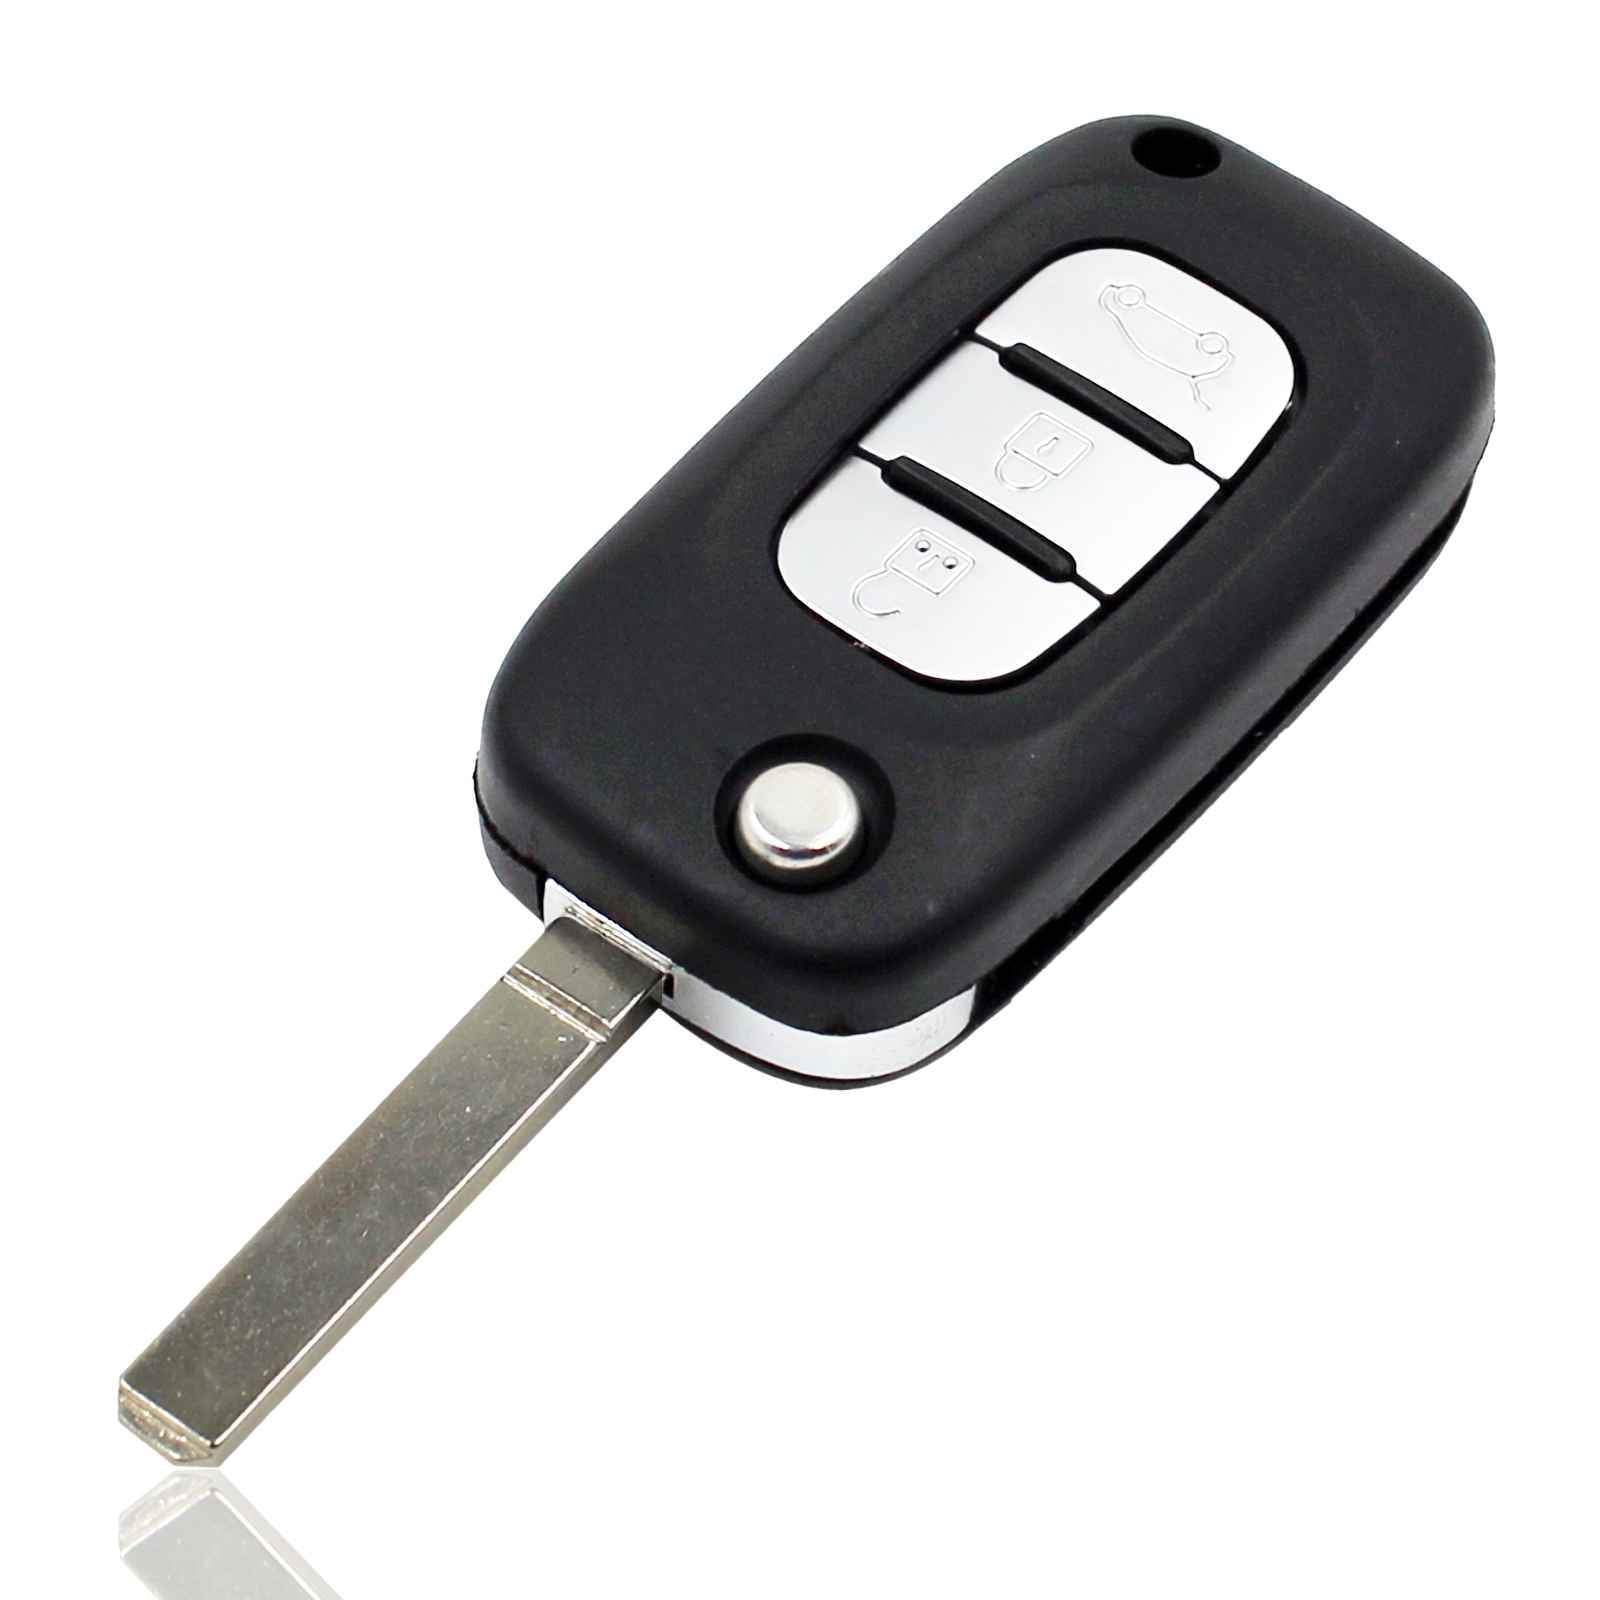 Fekete színű, 3 gombos Renault kulcsház, bicskakulcs ezüst színű gombokkal.